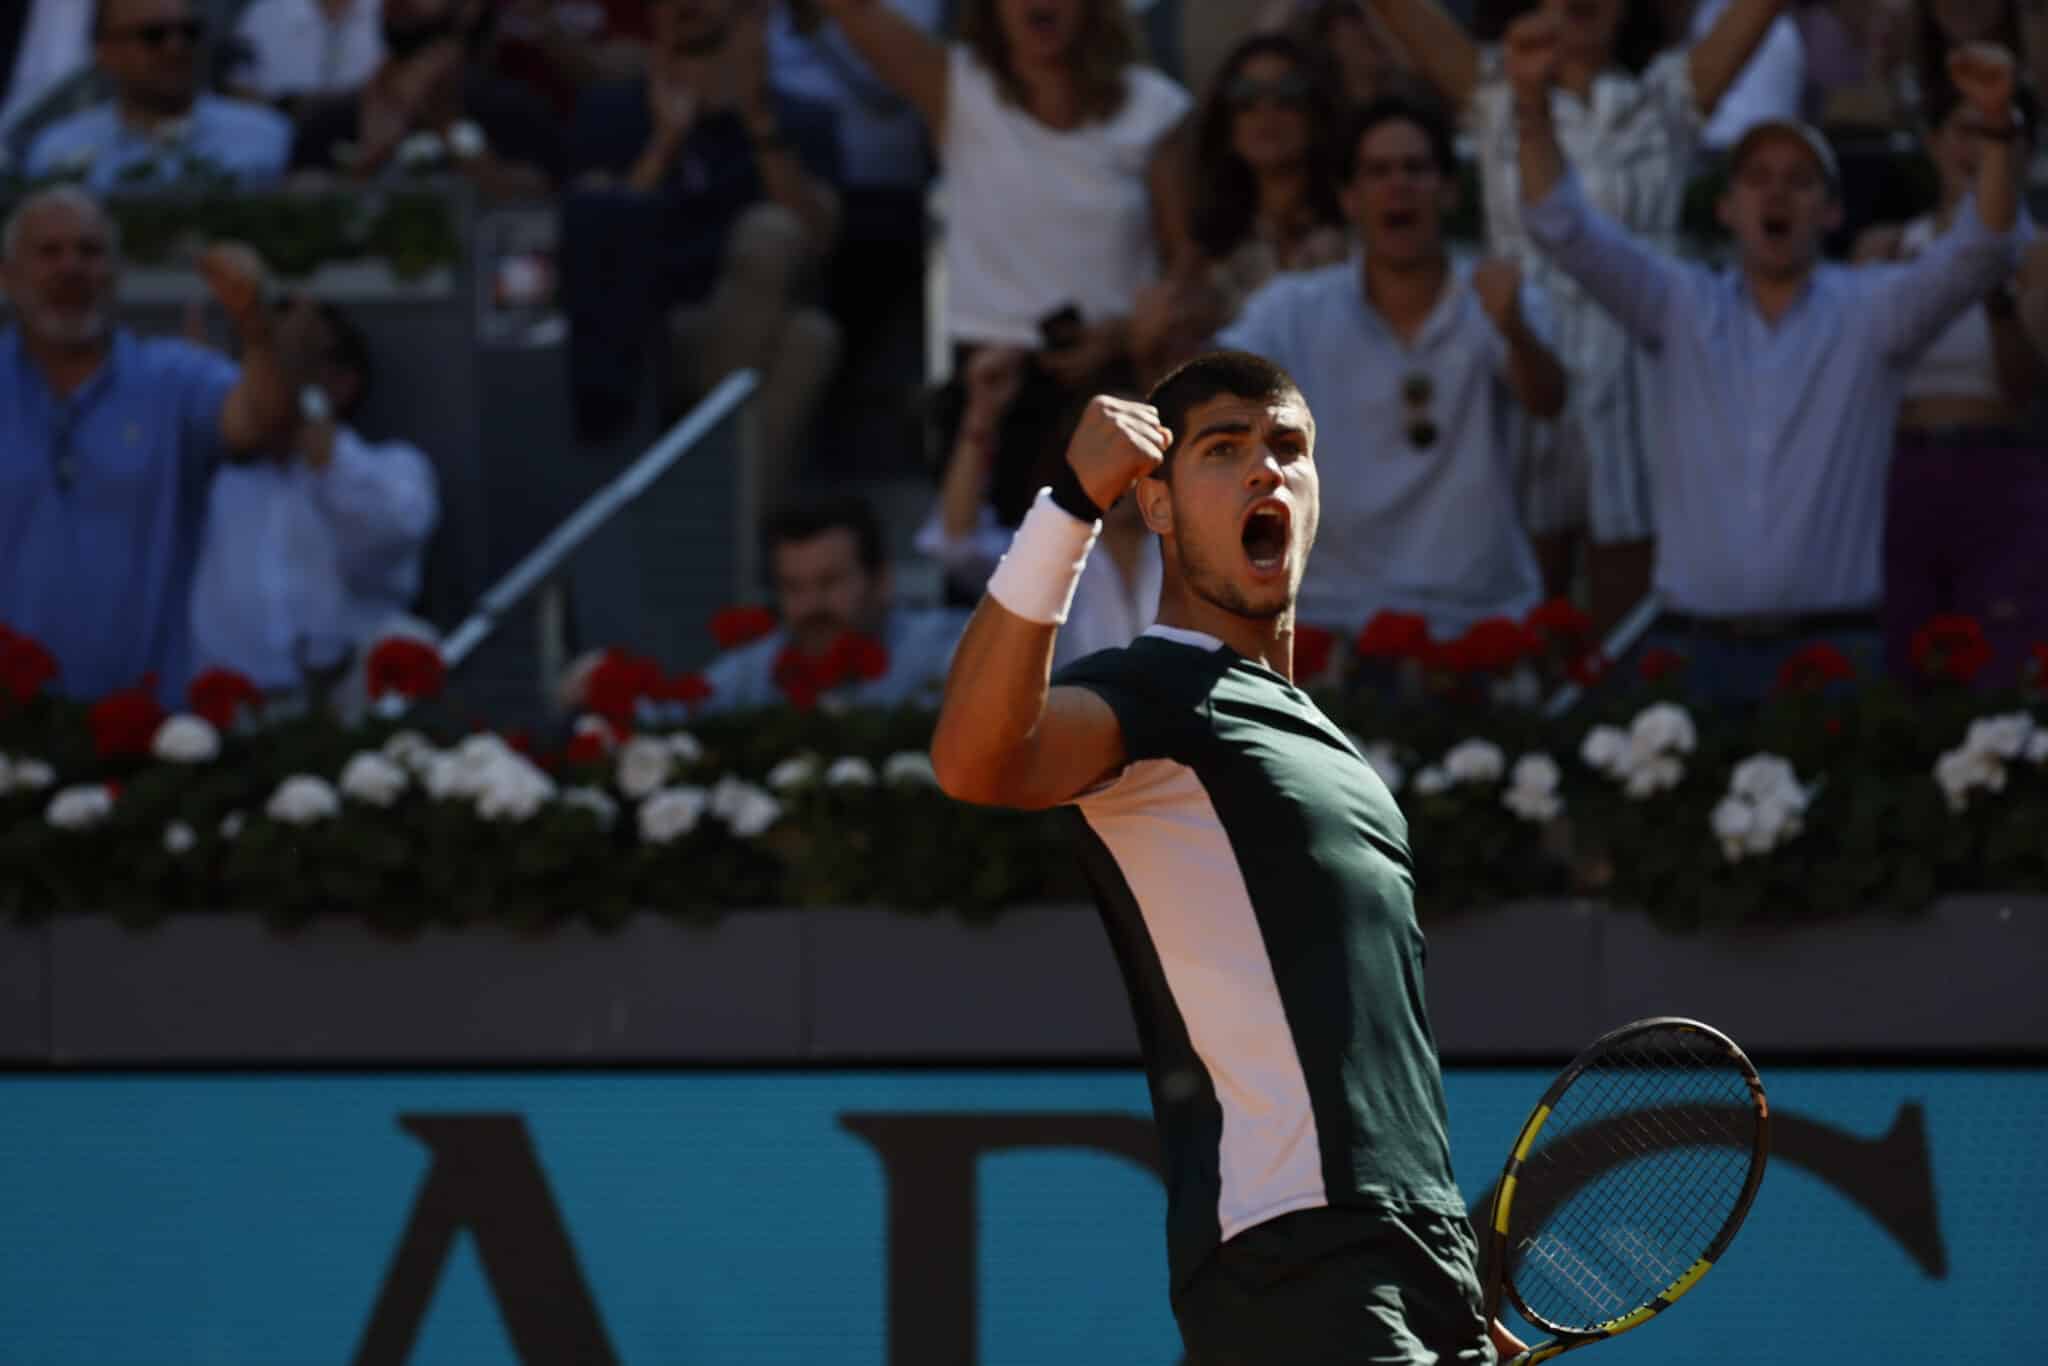 El tenista español Carlos Alcaraz celebra una bola frente al tenista serbio Novak Djokovic, durante el partido de semifinal del Mutua Madrid Open